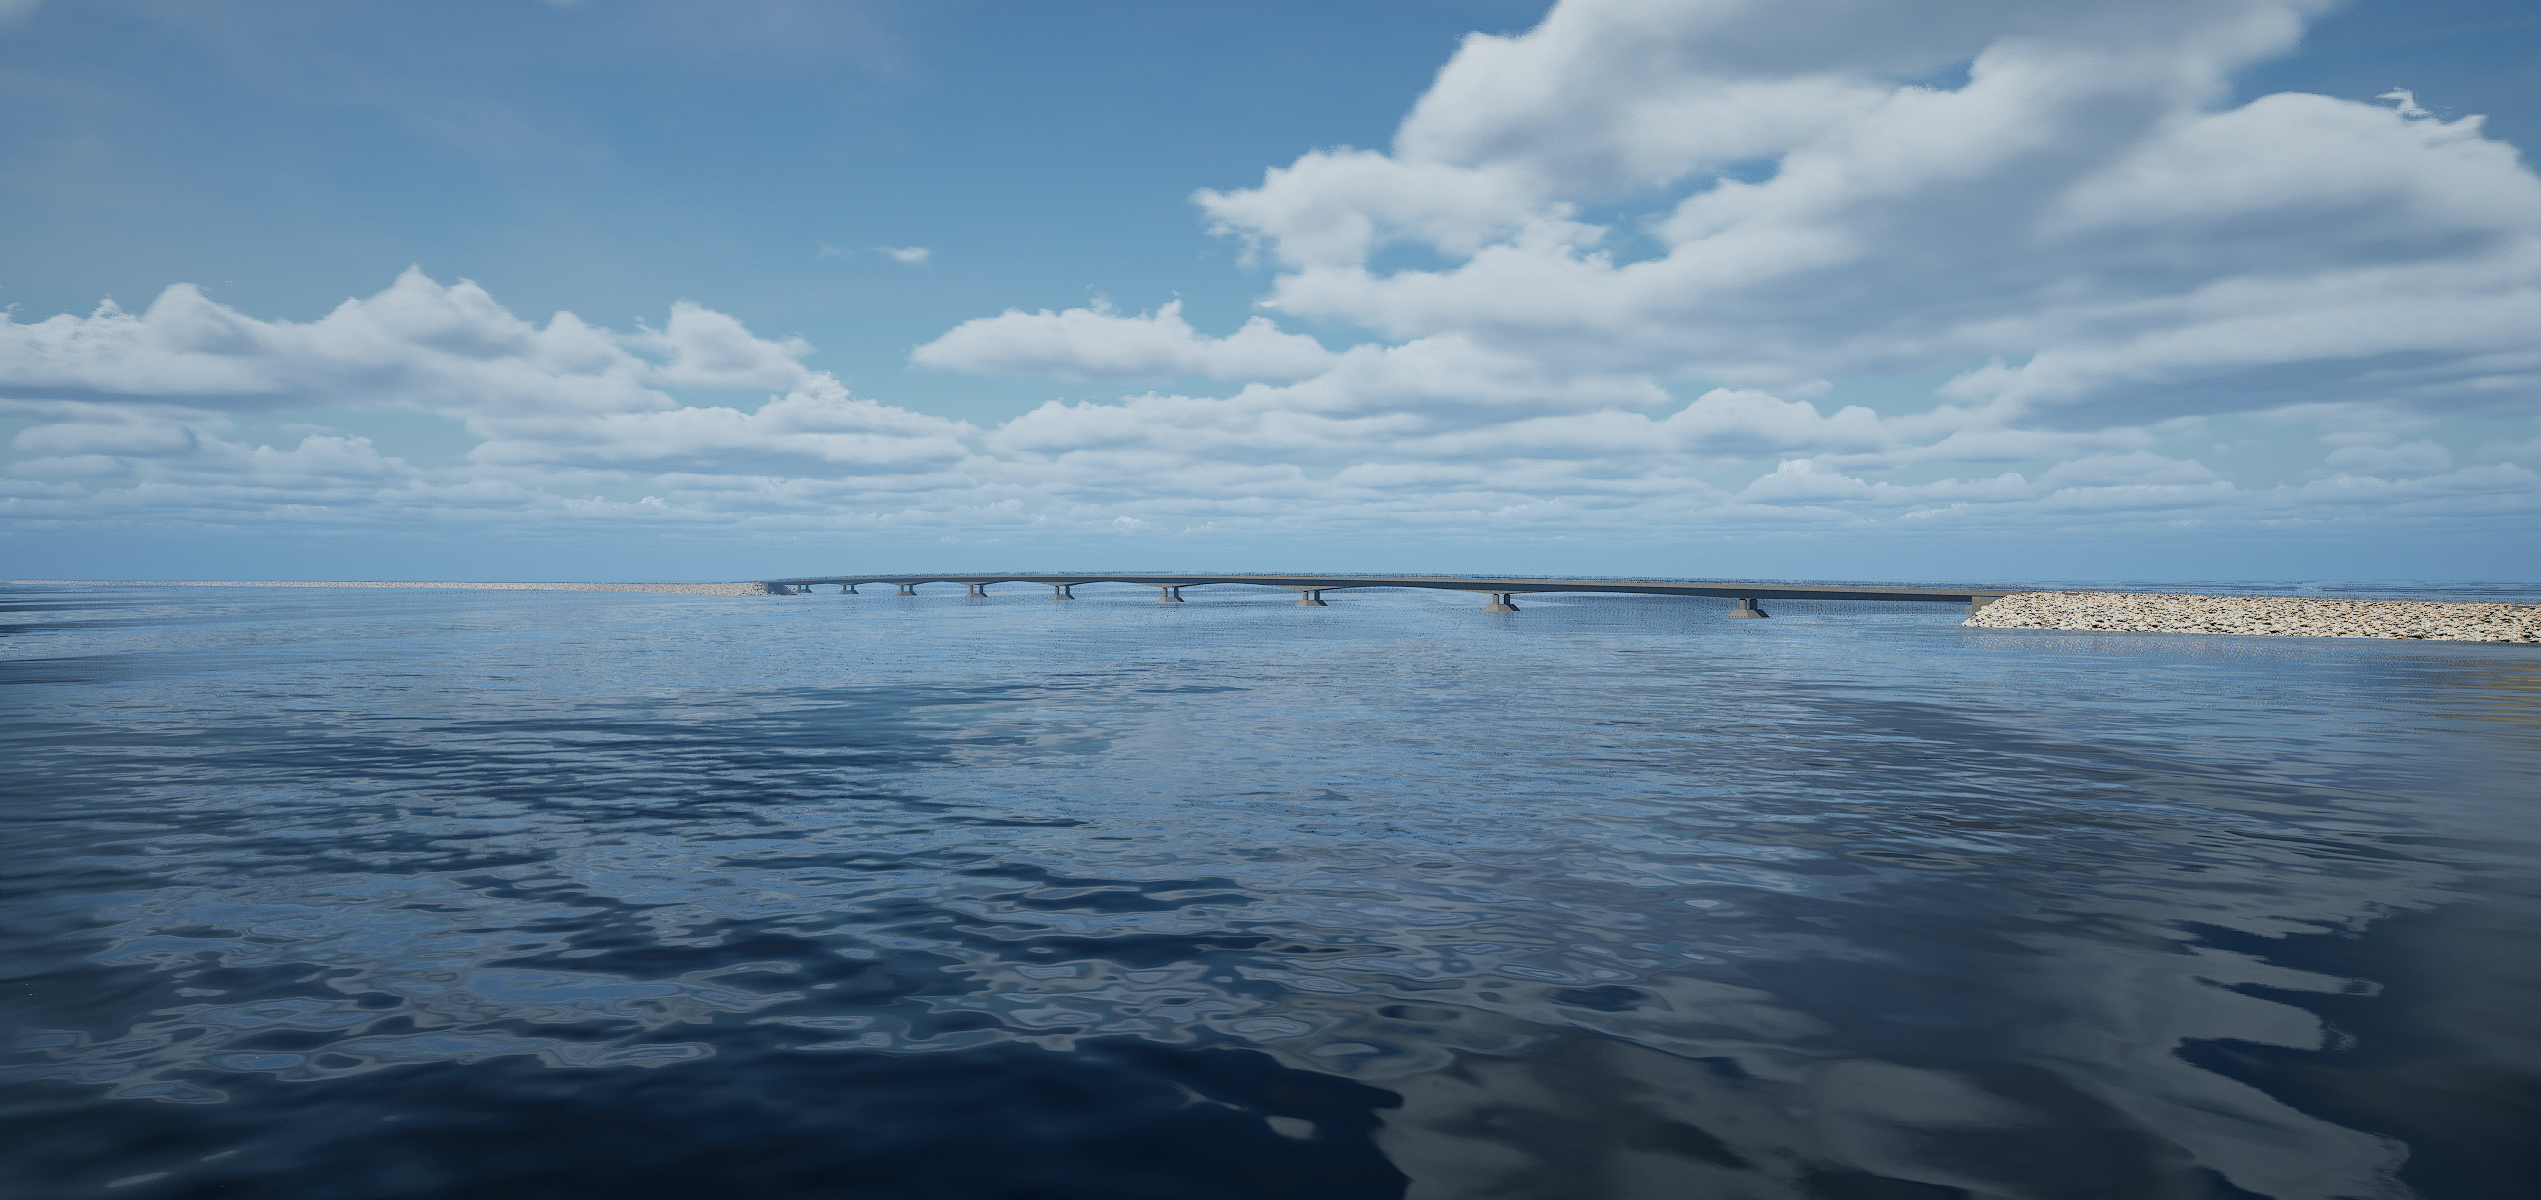 121 miljoonaa riittää: Hailuodon sillat saadaan rakennettua sille varatuilla rahoilla, sanoo projektipäällikkö